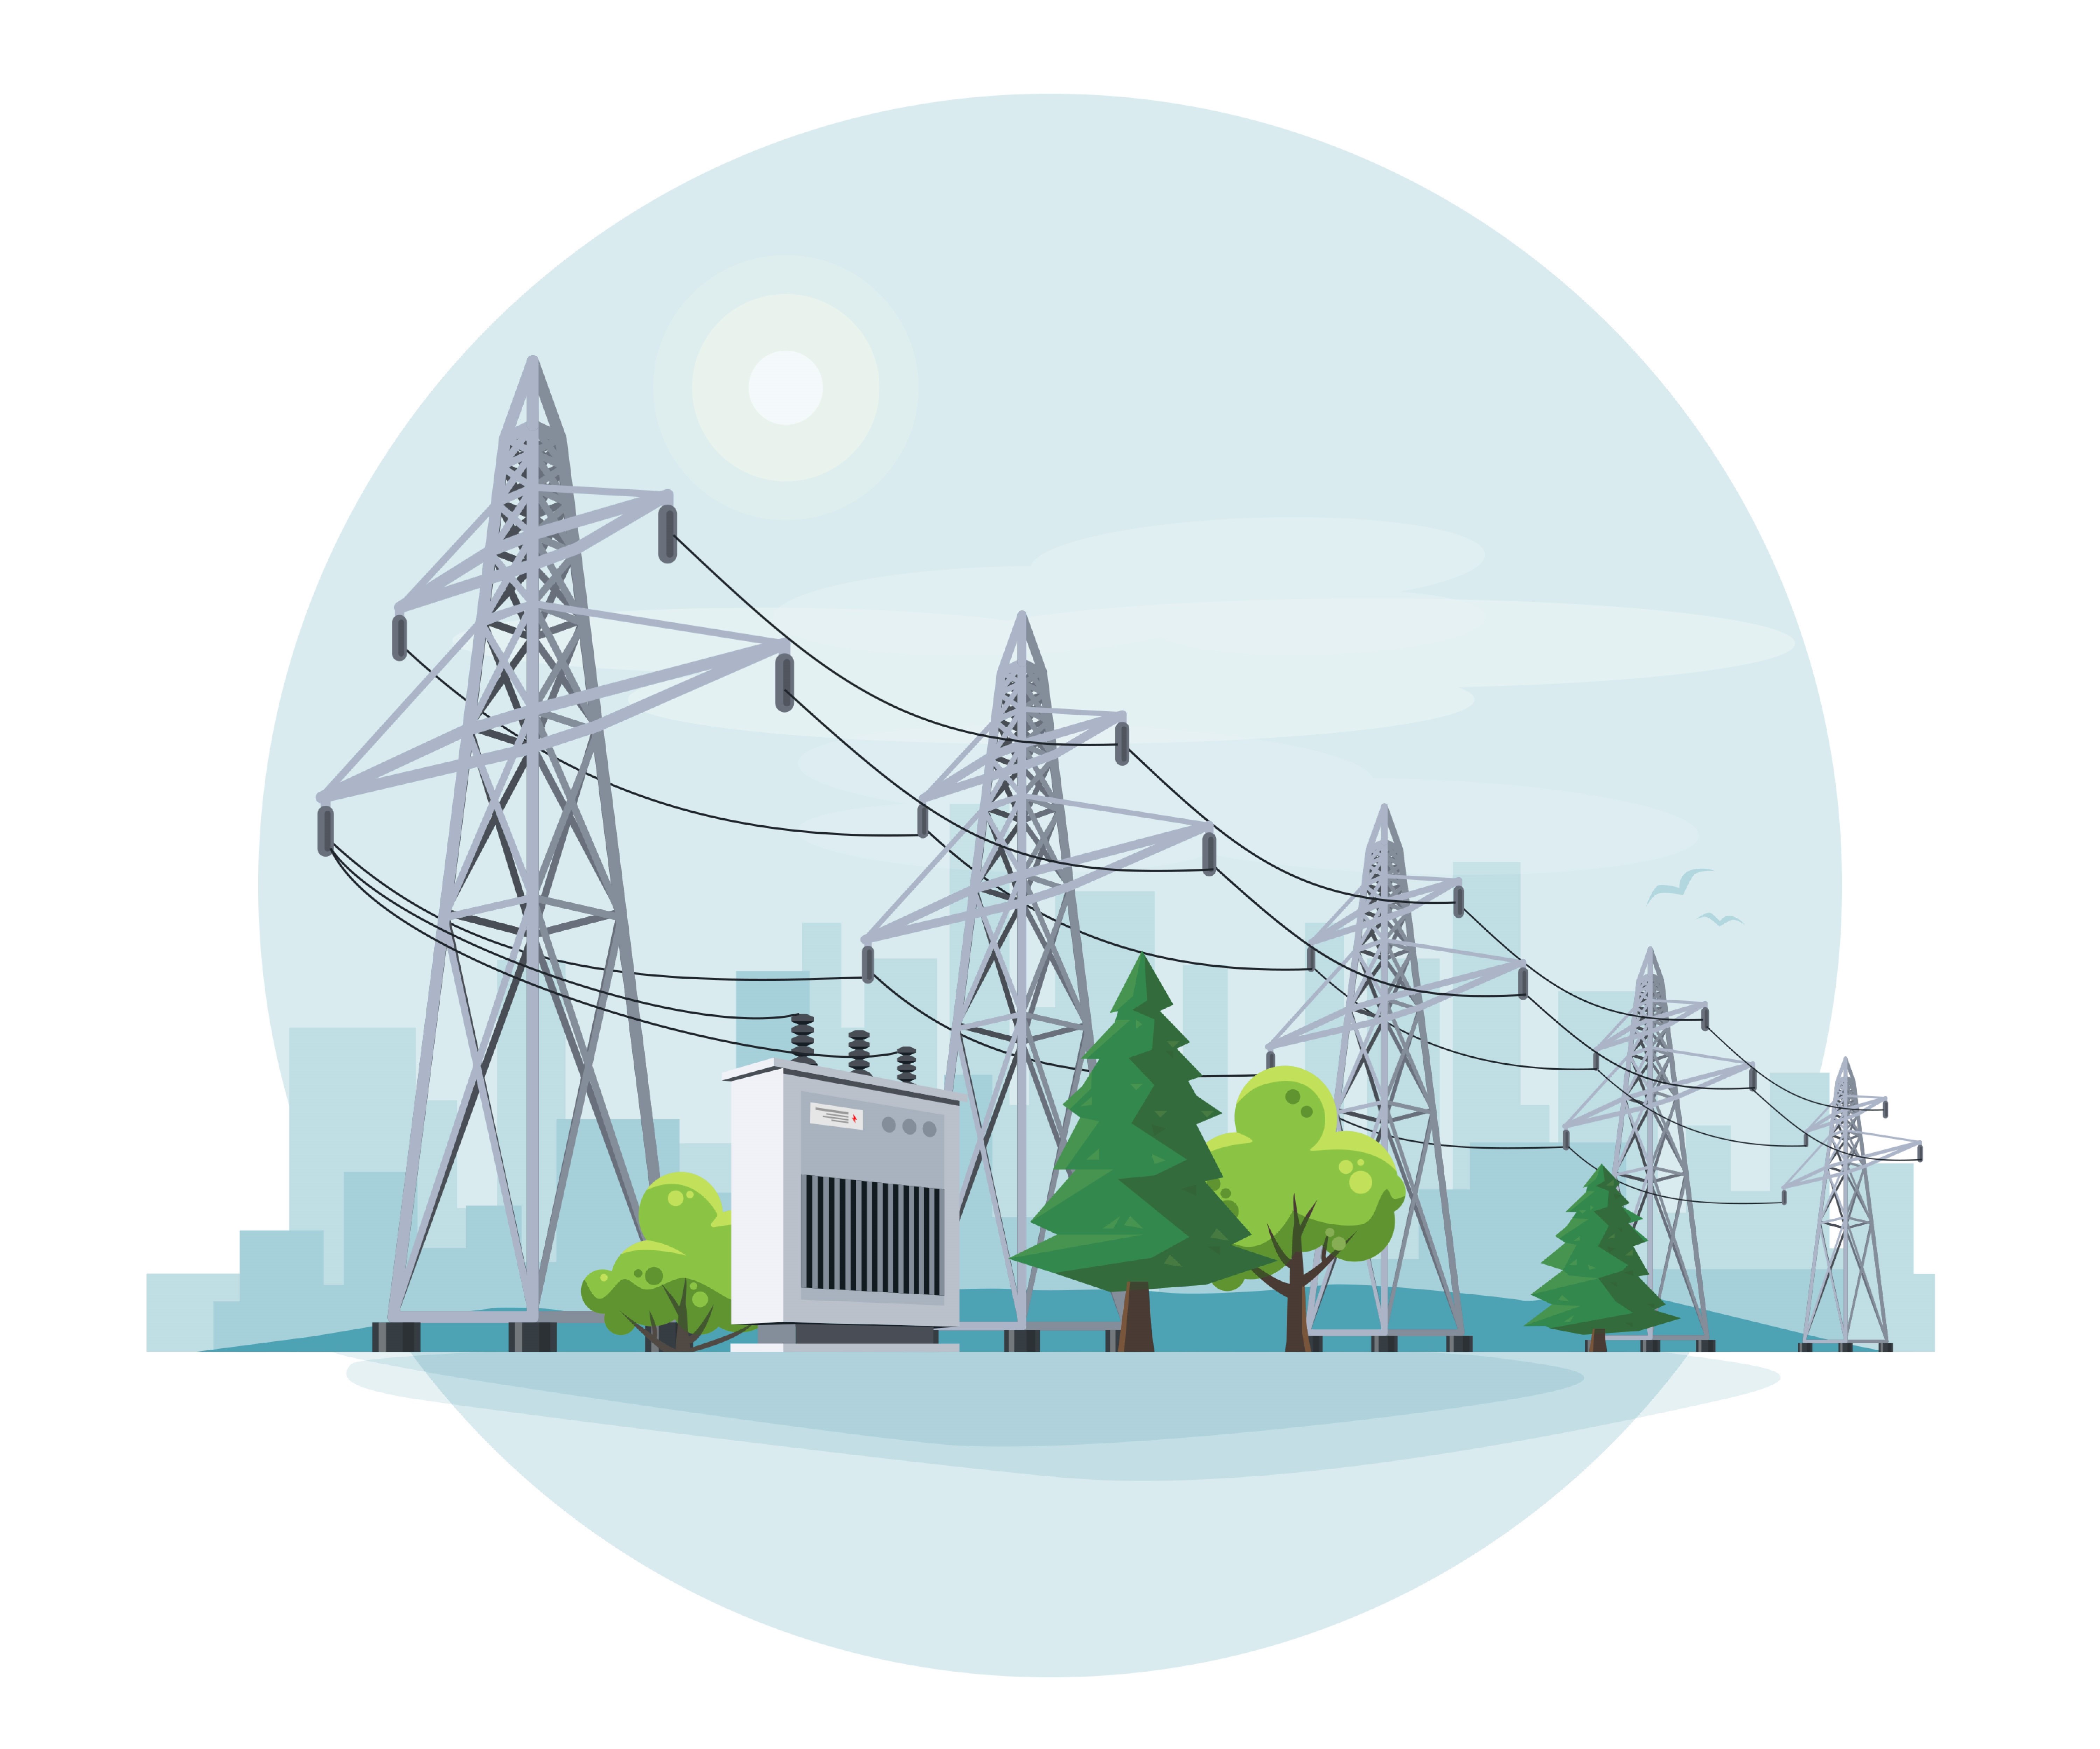 פורום אנרגיה 51: אתגר רשת החשמל – הולכה, ניצול אופטימלי של משאבי הרשת וייצור מקומי